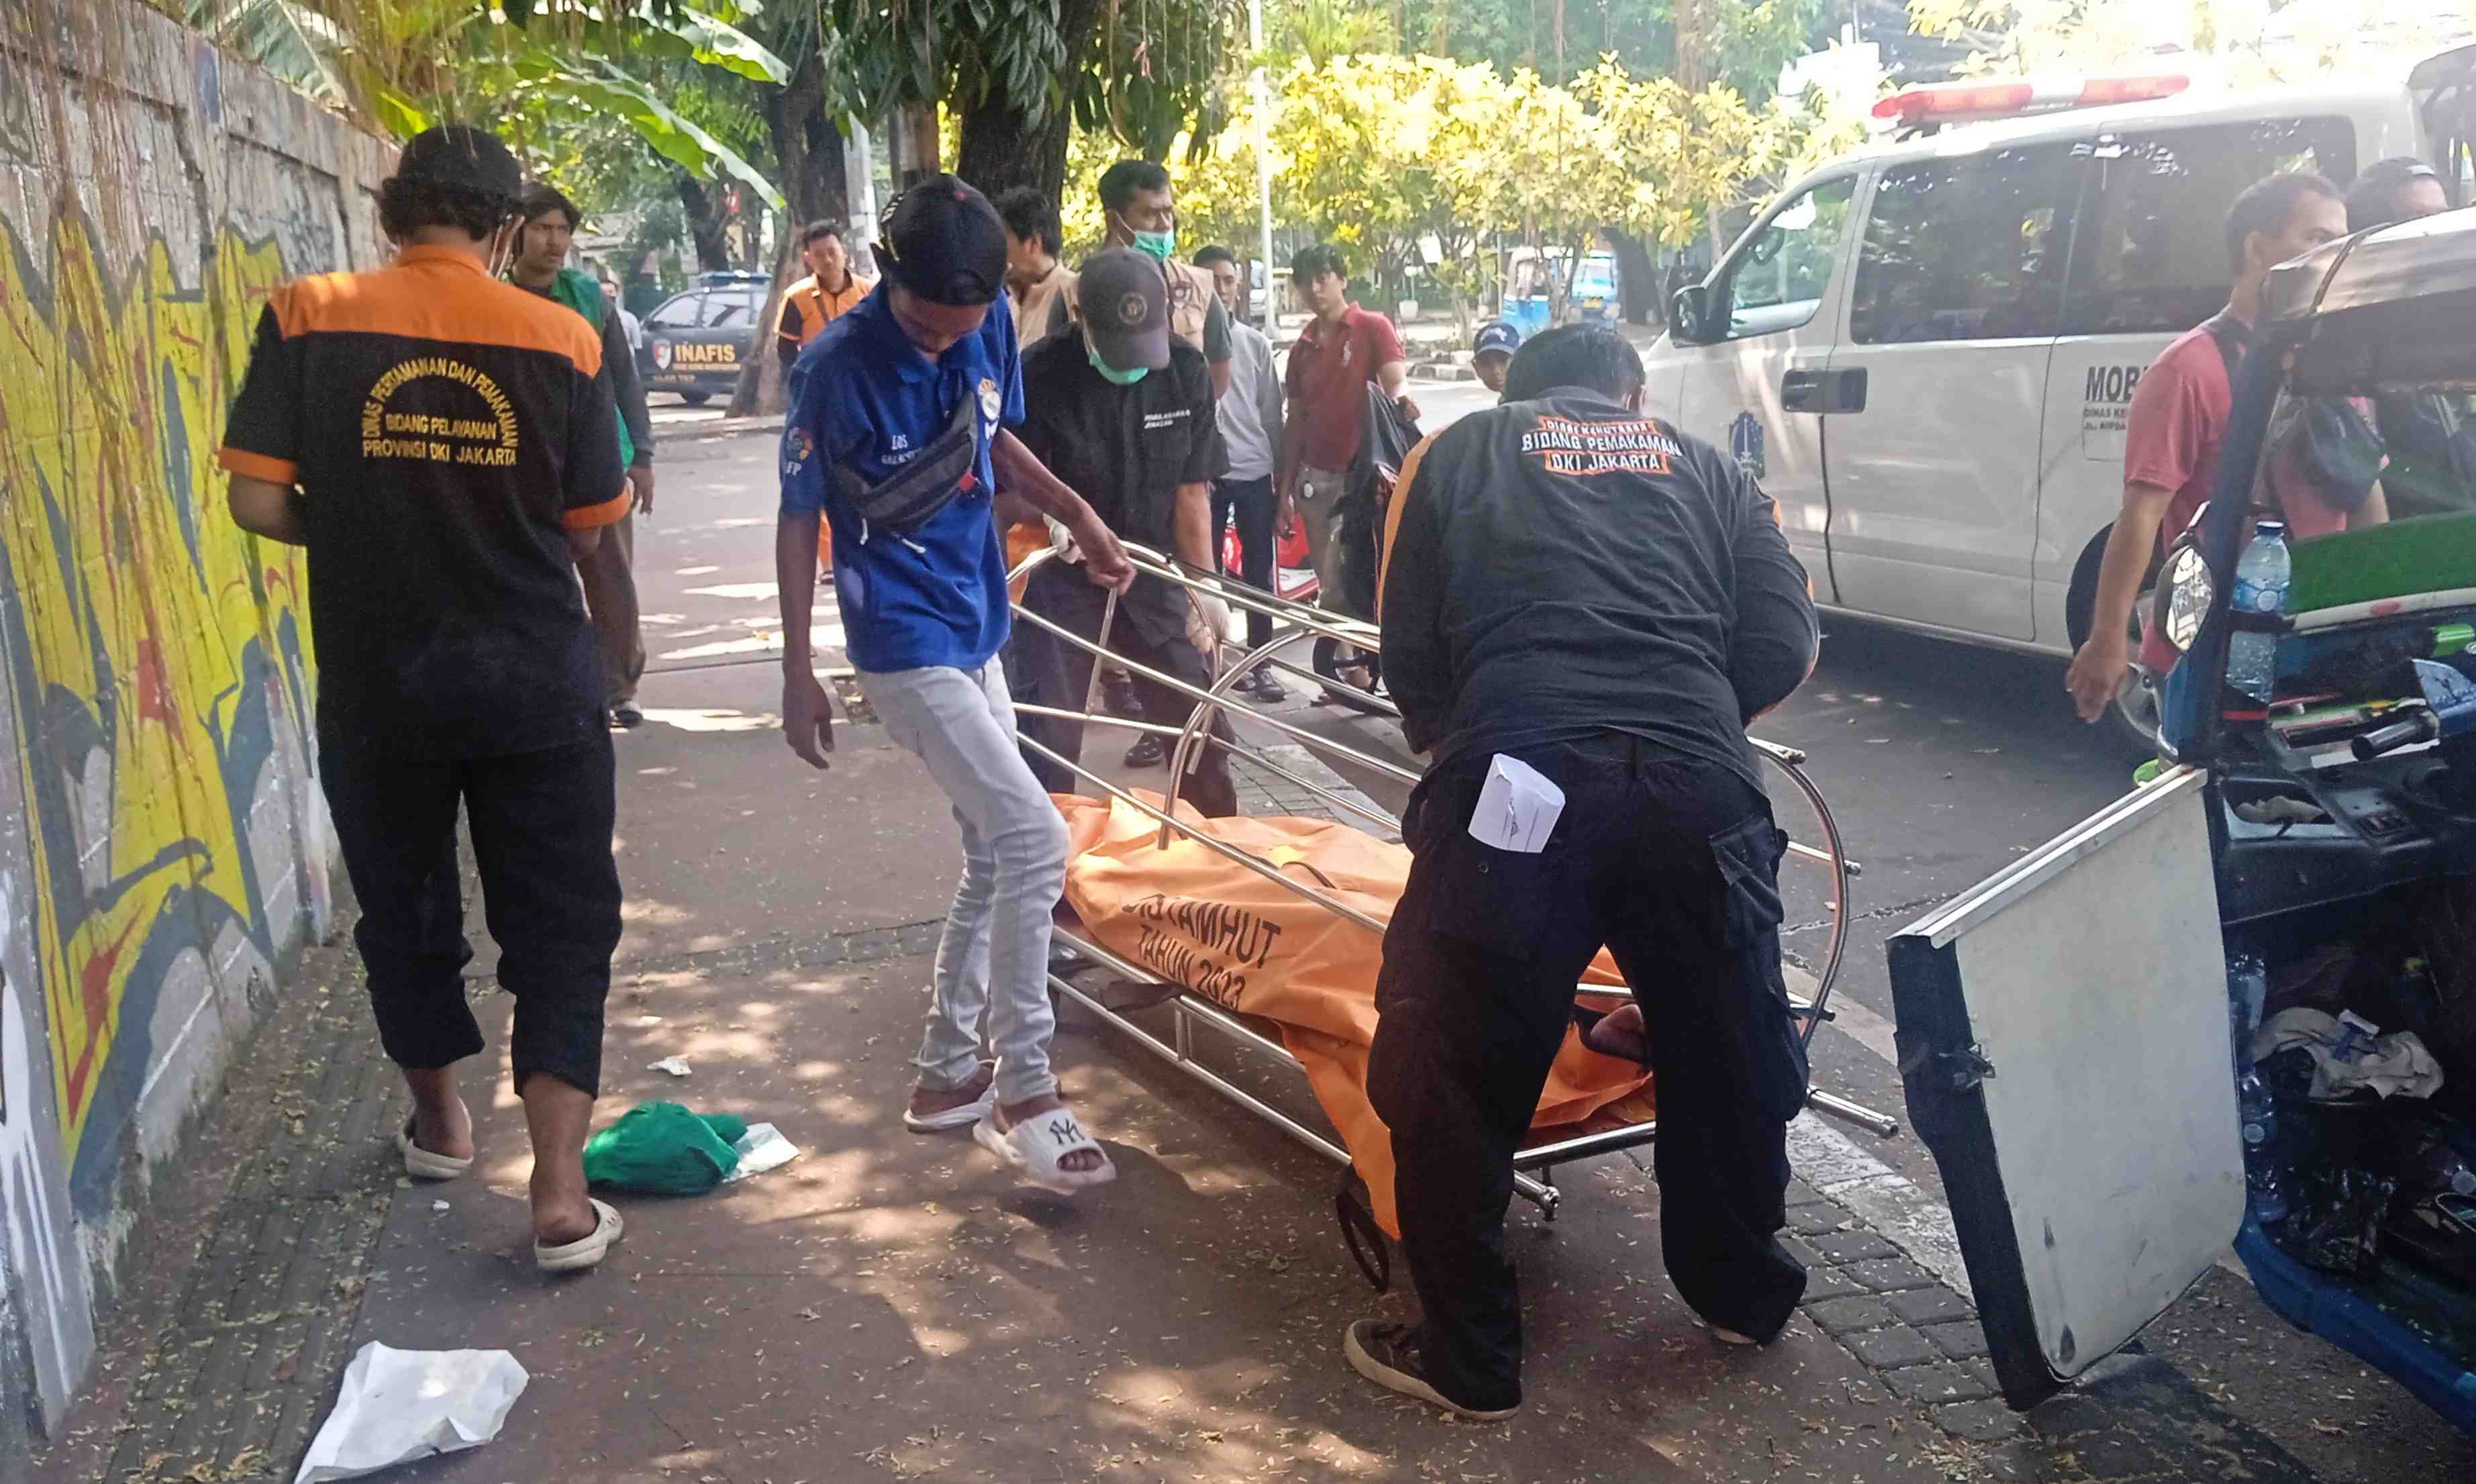 Sopir Bajaj Meninggal di Sawah Besar dengan Kondisi Mulut Berlumur Darah, Saksi: Tidur Gak Bangun-Bangun   